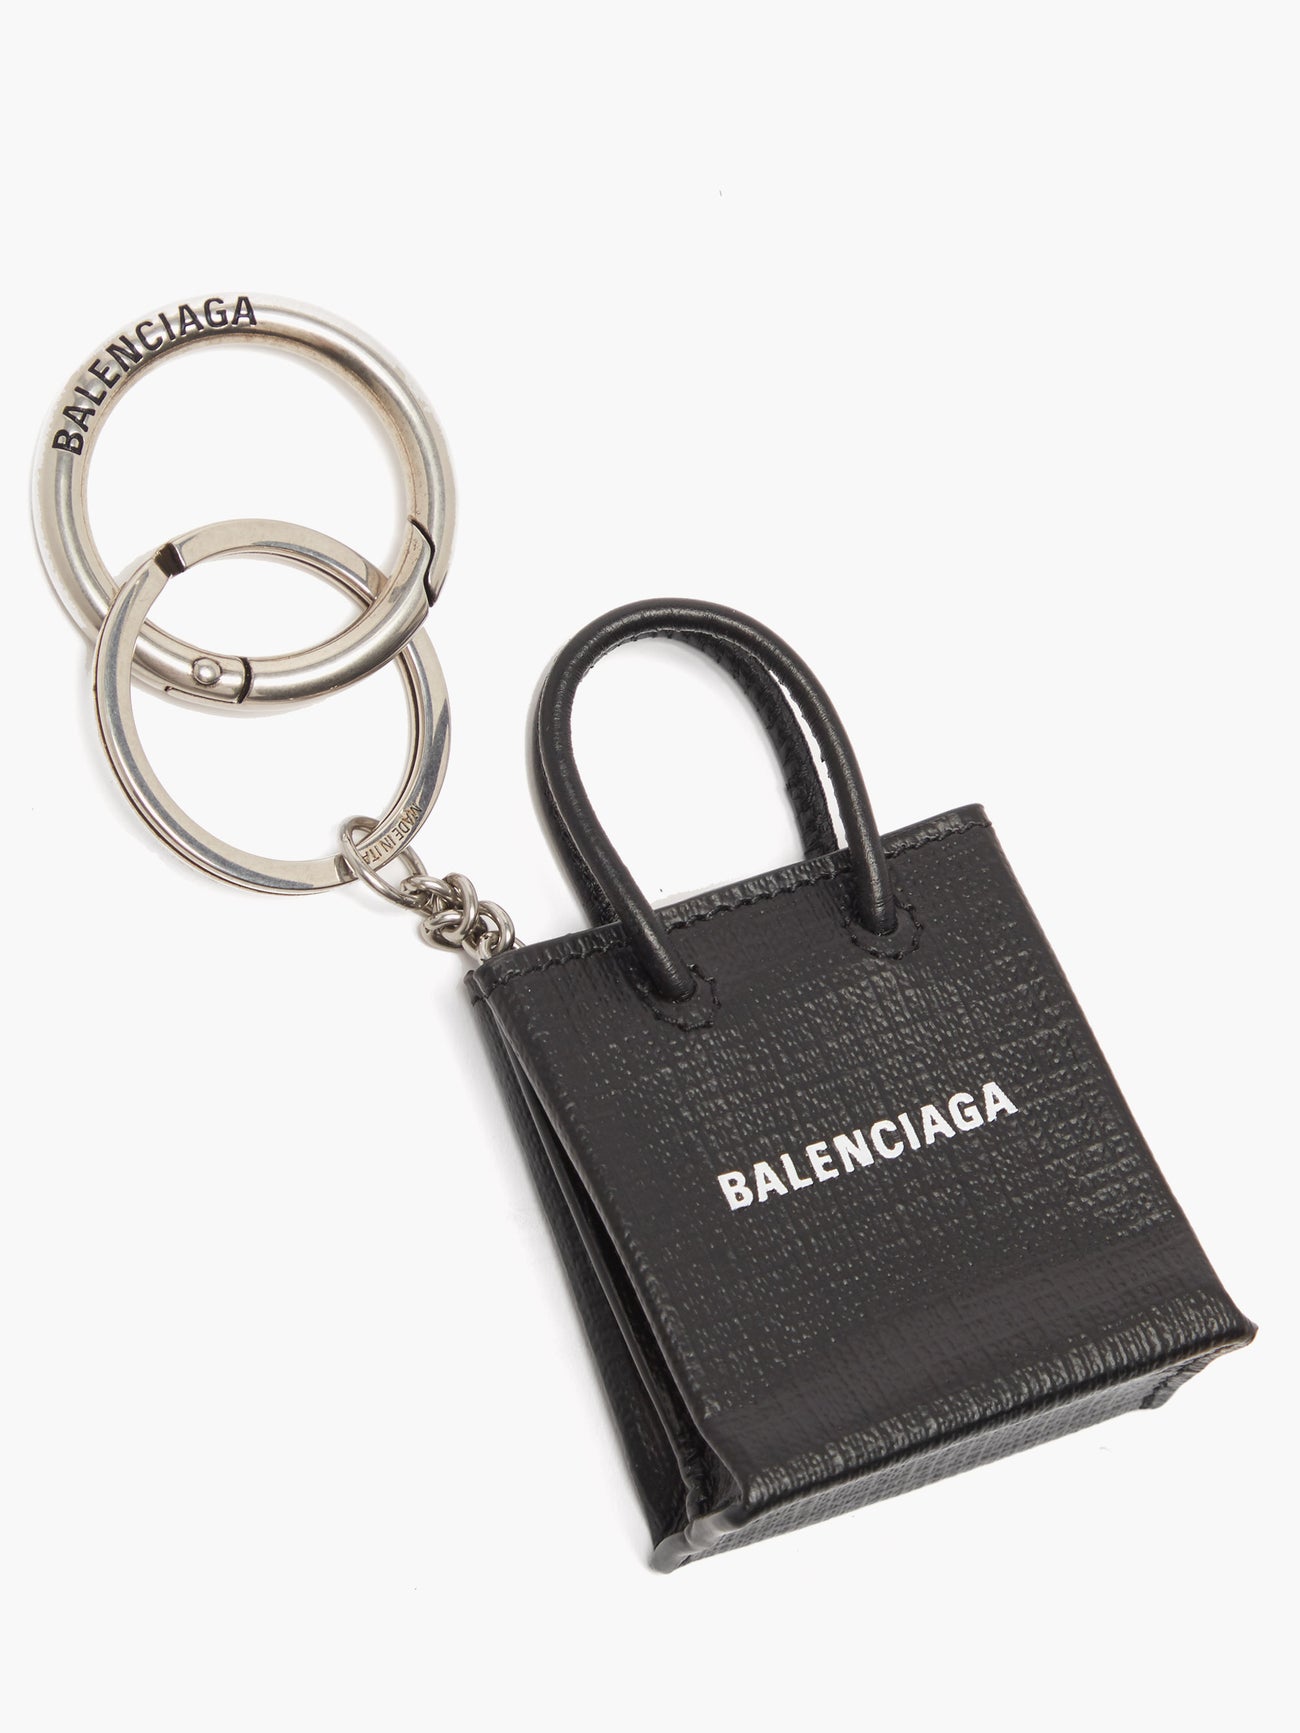 BALENCIAGA Shopping tote leather keyring